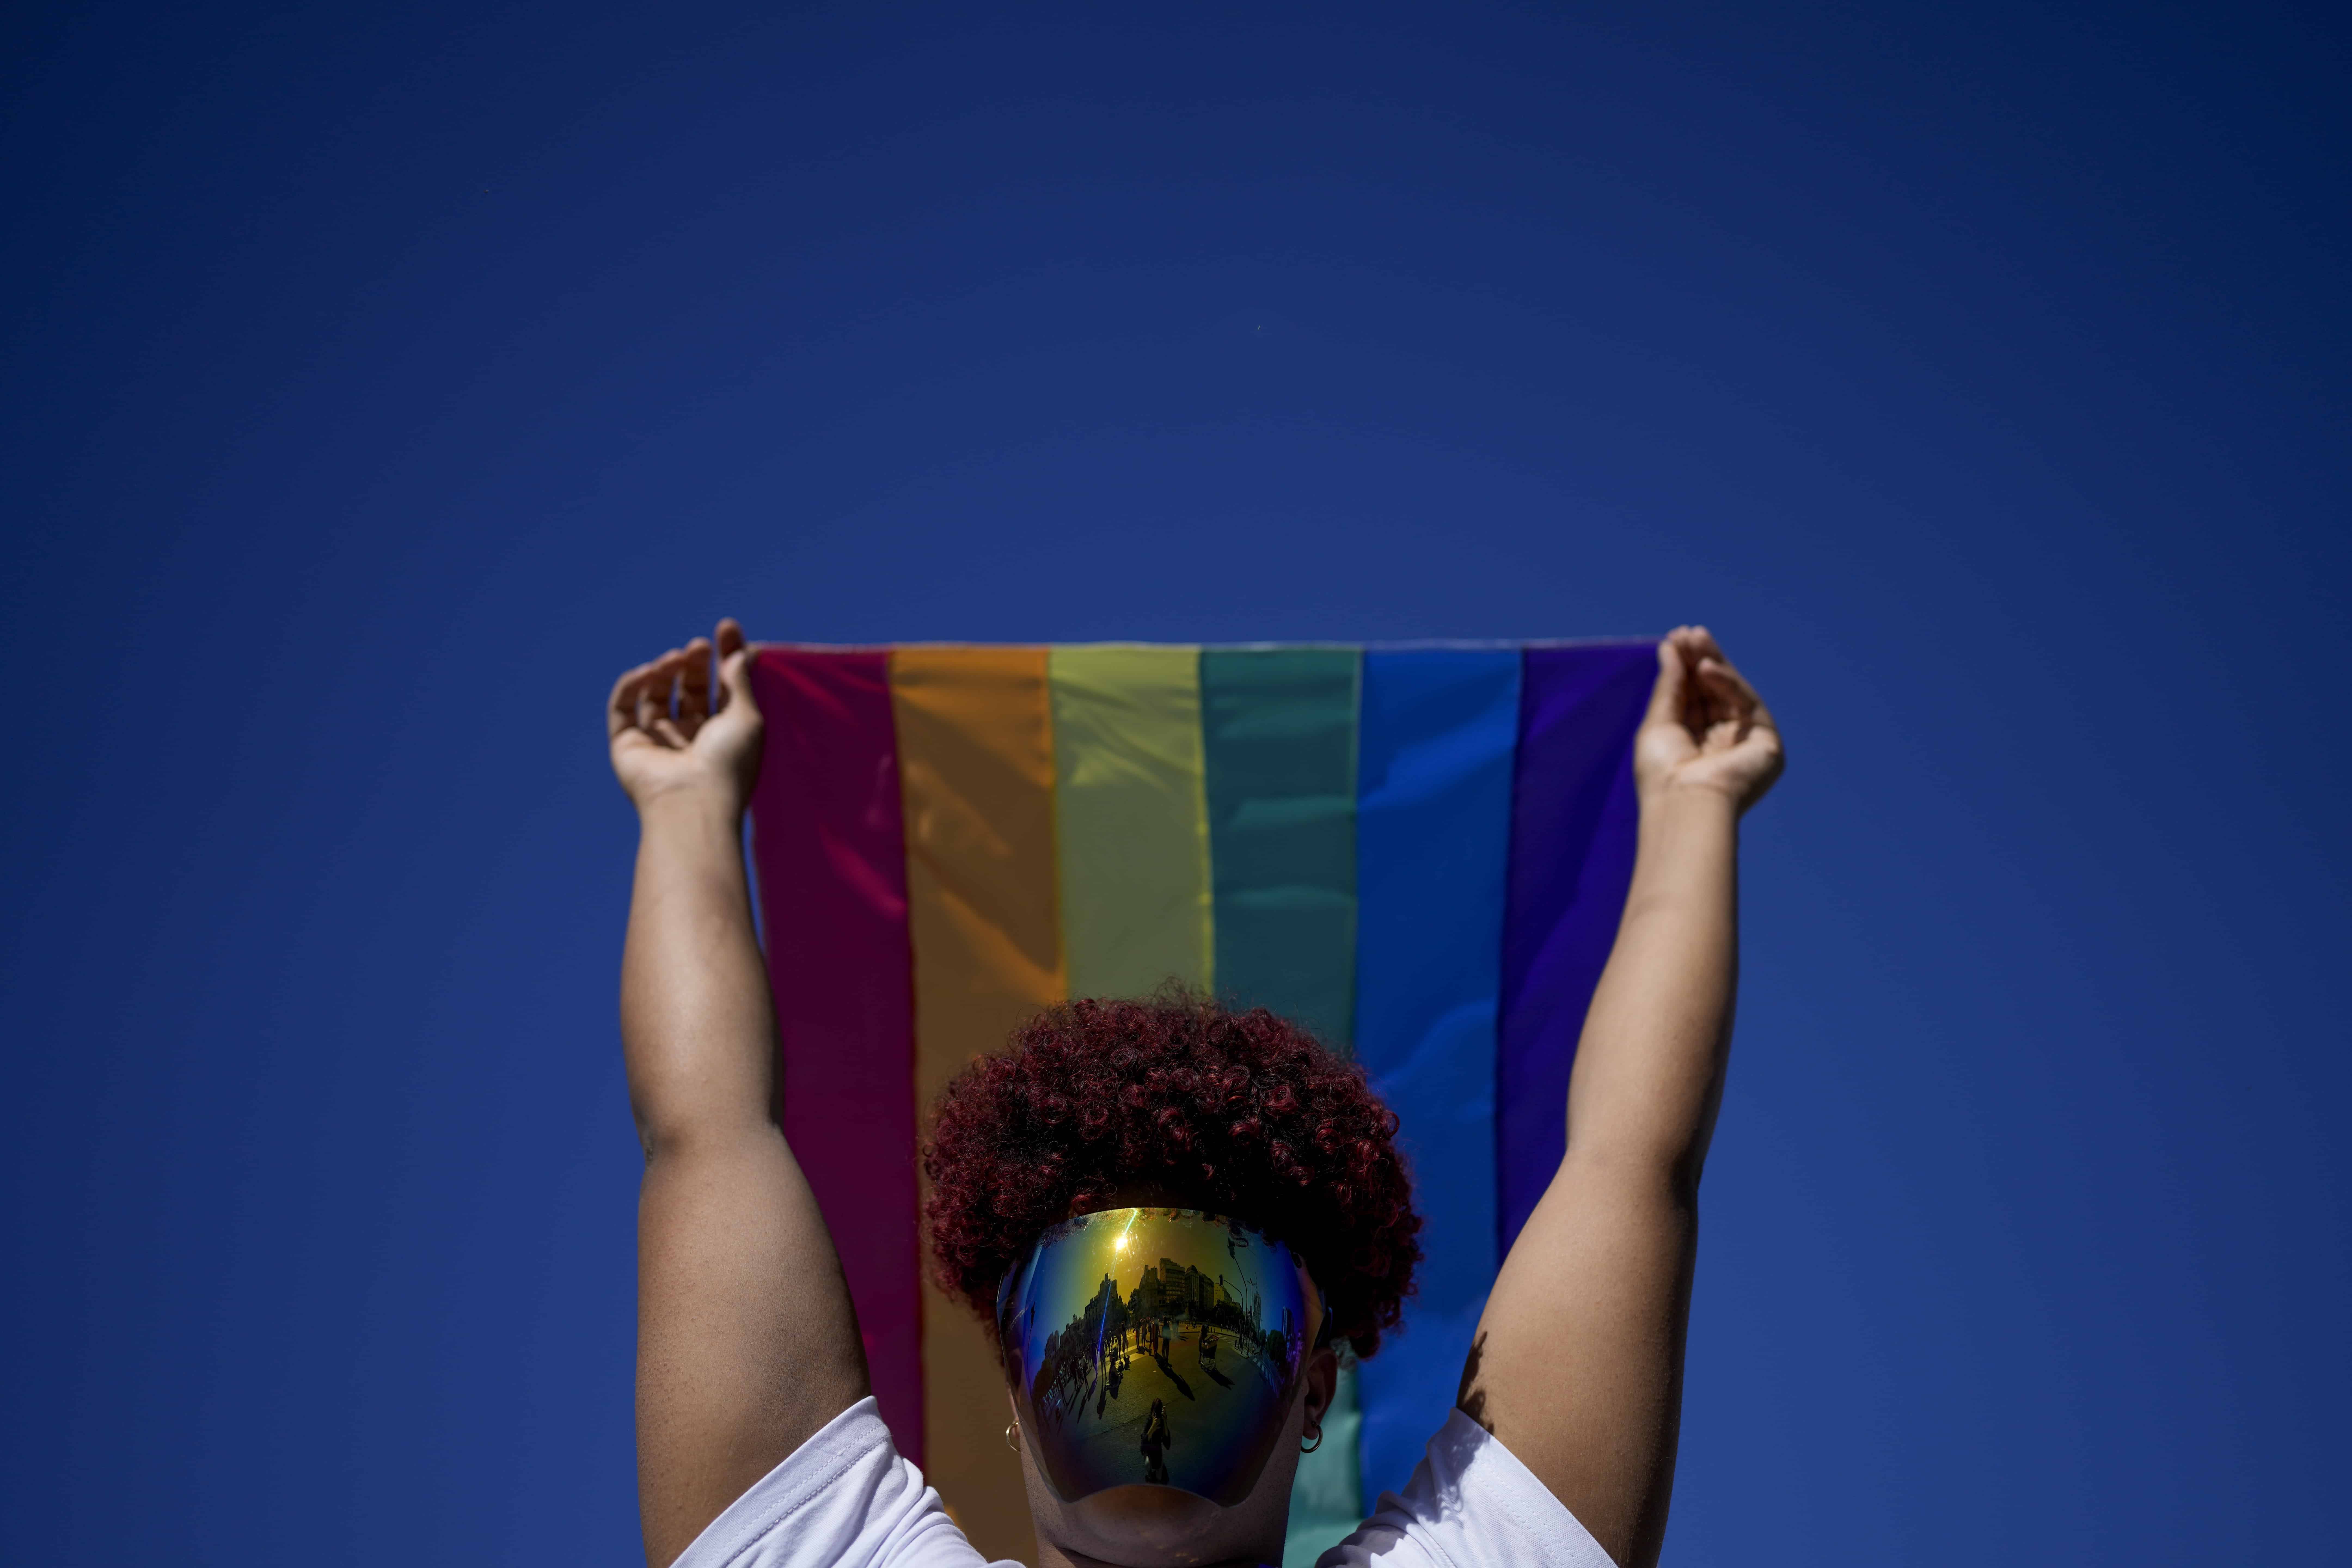 Una persona sostiene una bandera del arcoíris durante la Marcha del Orgullo, organizada por la comunidad de lesbianas, gays, bisexuales, transexuales y queer (LGBTQ), en Buenos Aires, Argentina, el sábado 5 de noviembre de 2022.